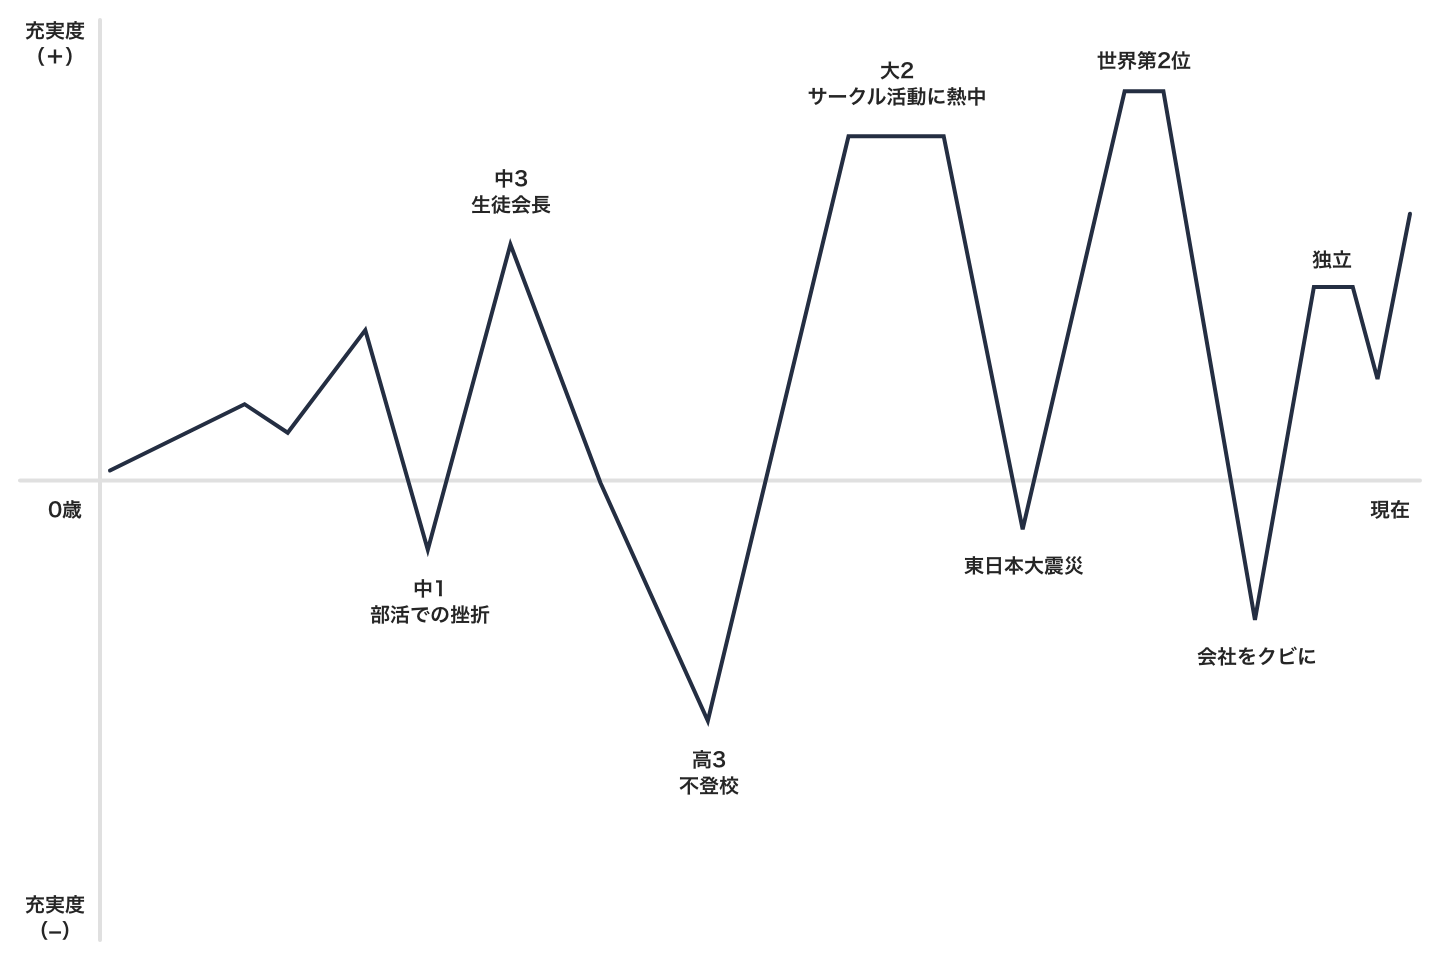 阪井のライフチャート